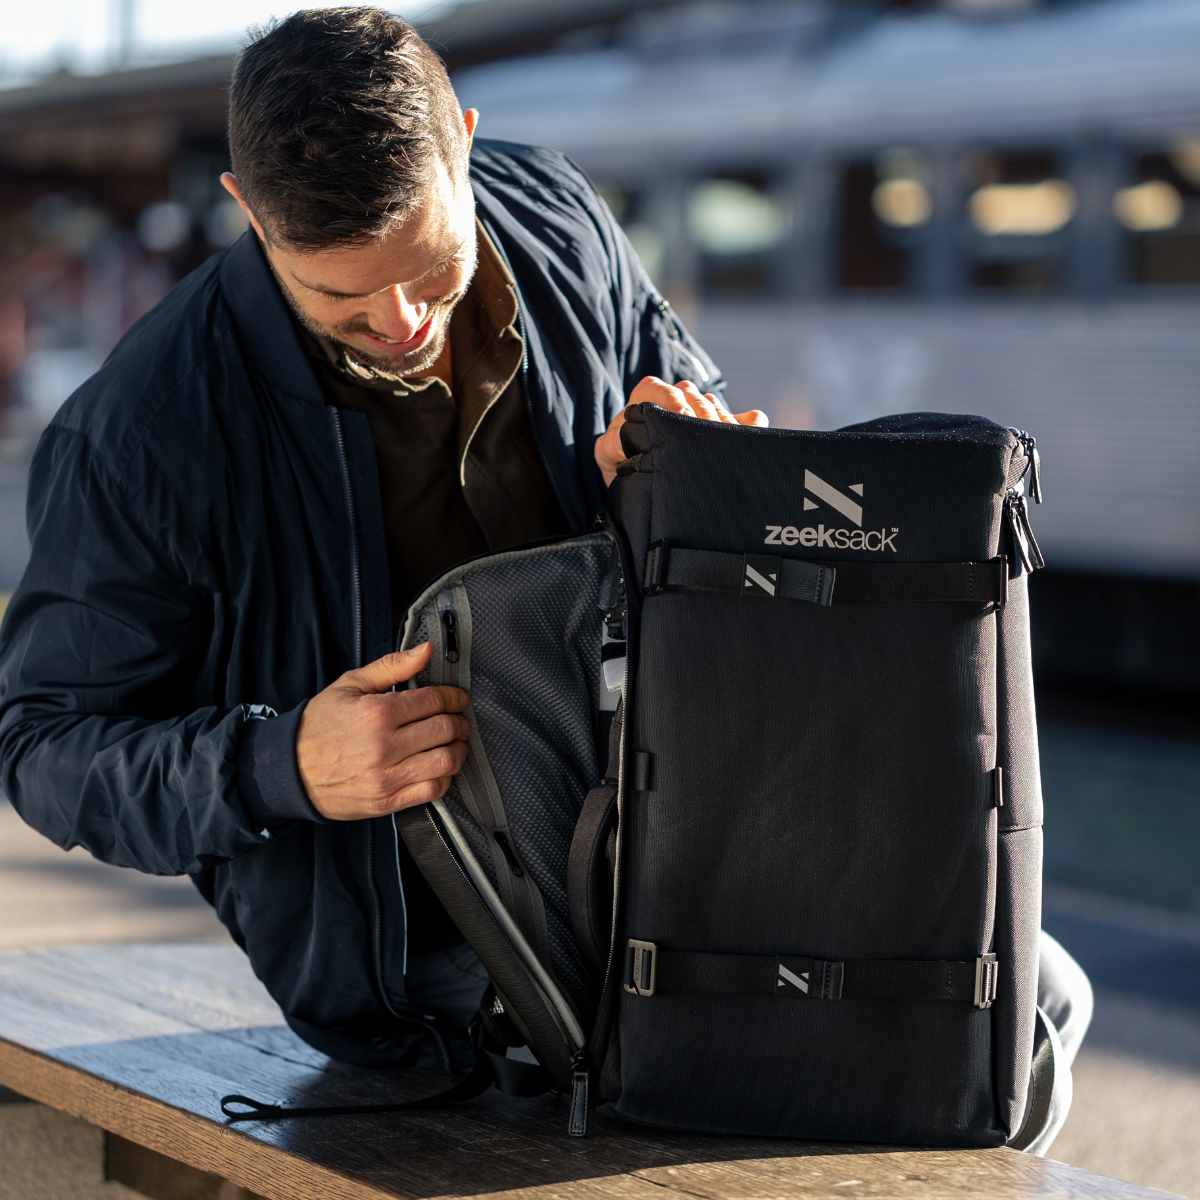 Man öppnar praktisk ryggsäck med en sidoöppning på tågstation